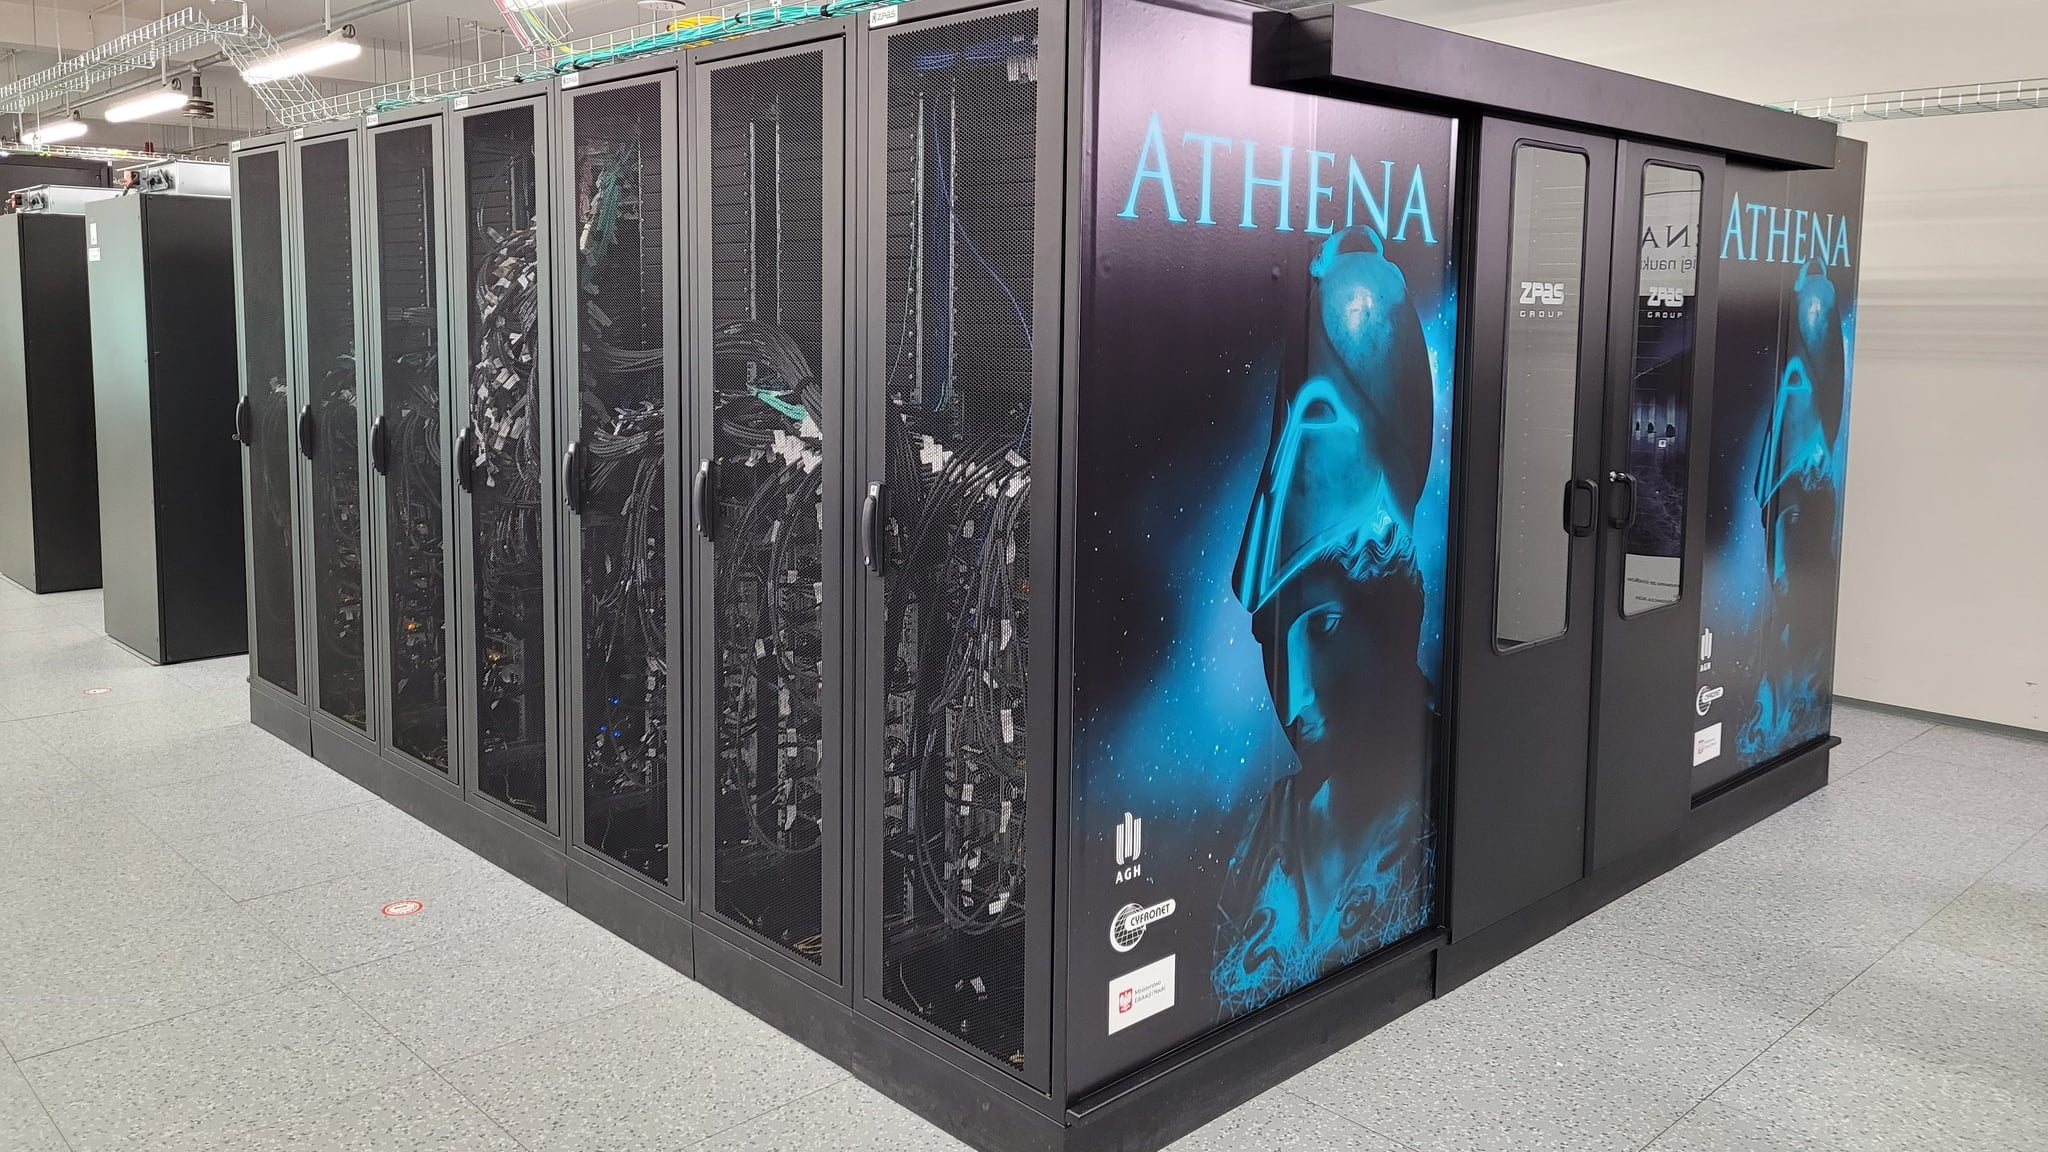 W Polsce ruszył superkomputer Athena. Po uruchomieniu poświęcił go abp. Czarownik